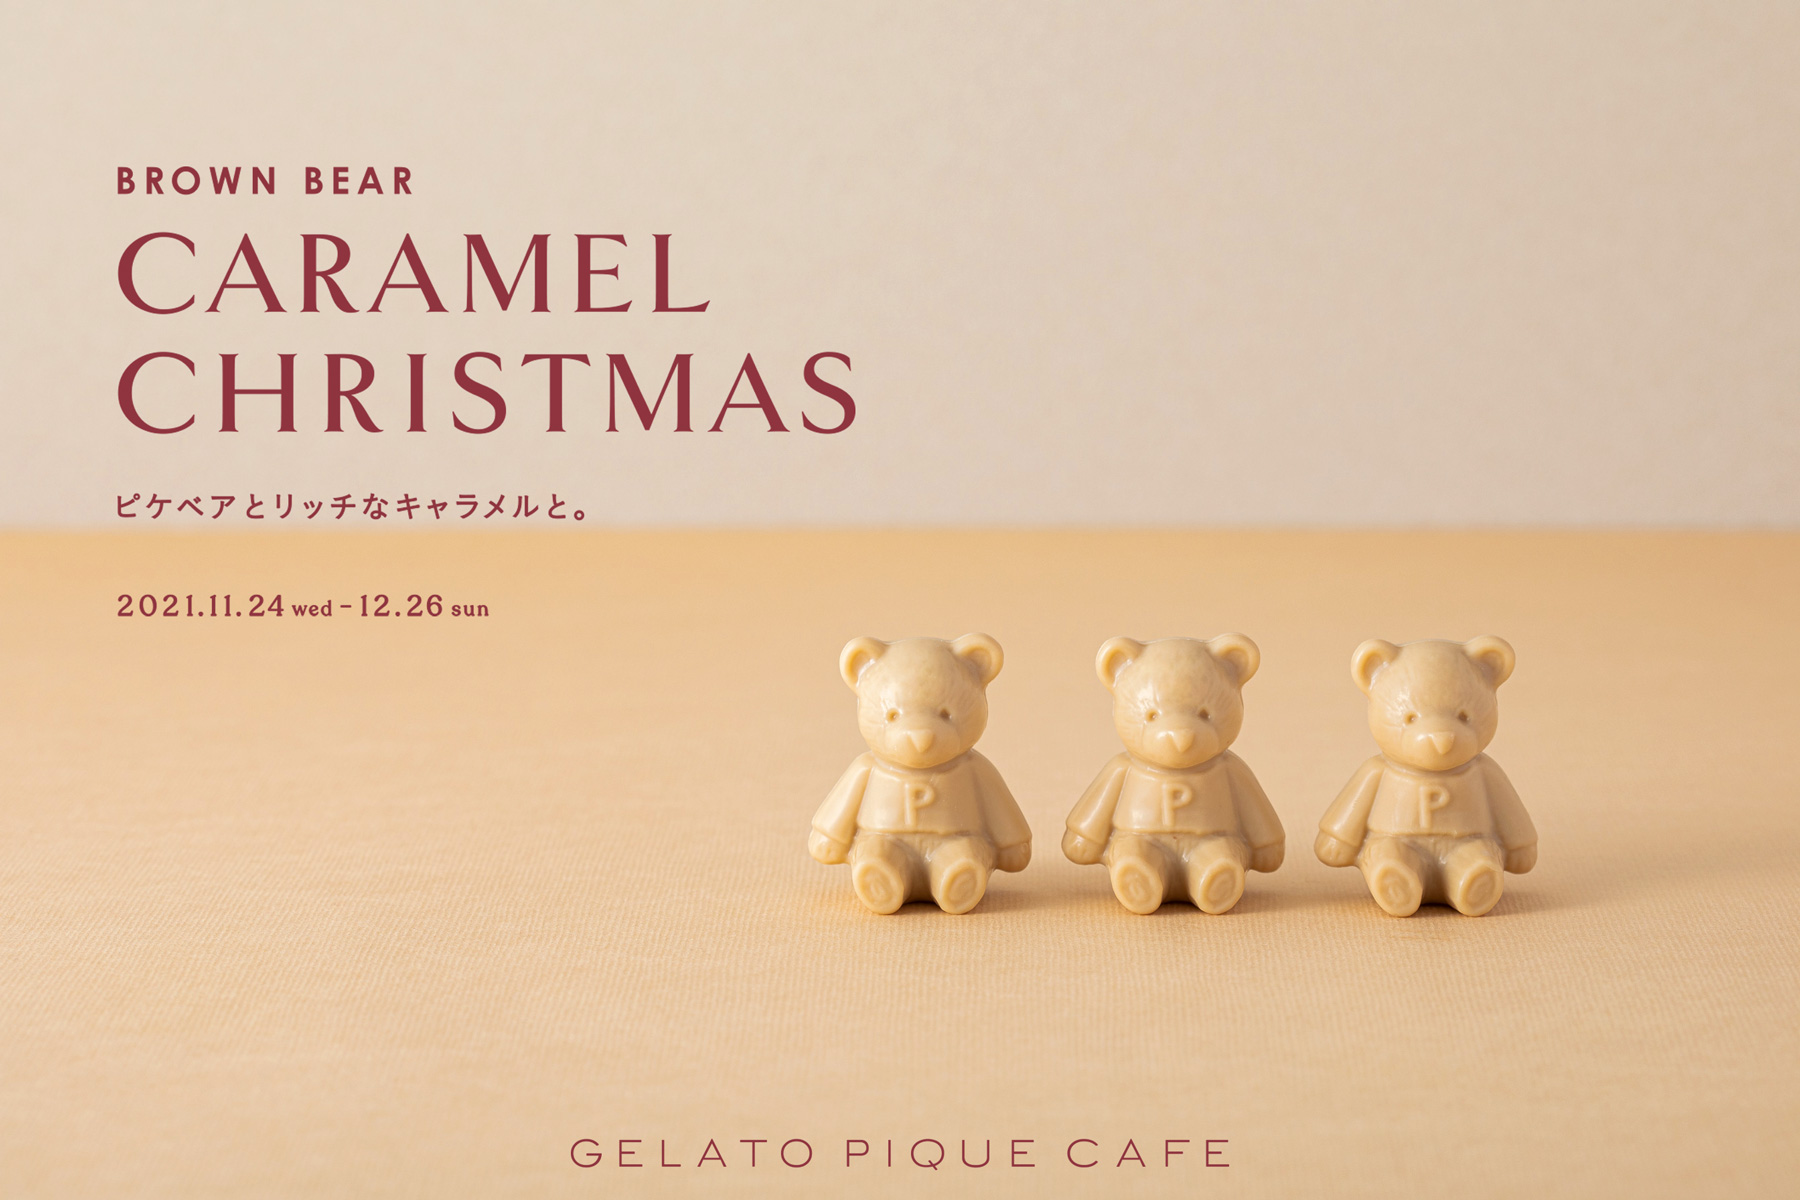 ジェラピケカフェのクリスマススイーツがかわいい～！ 愛らしいクマ